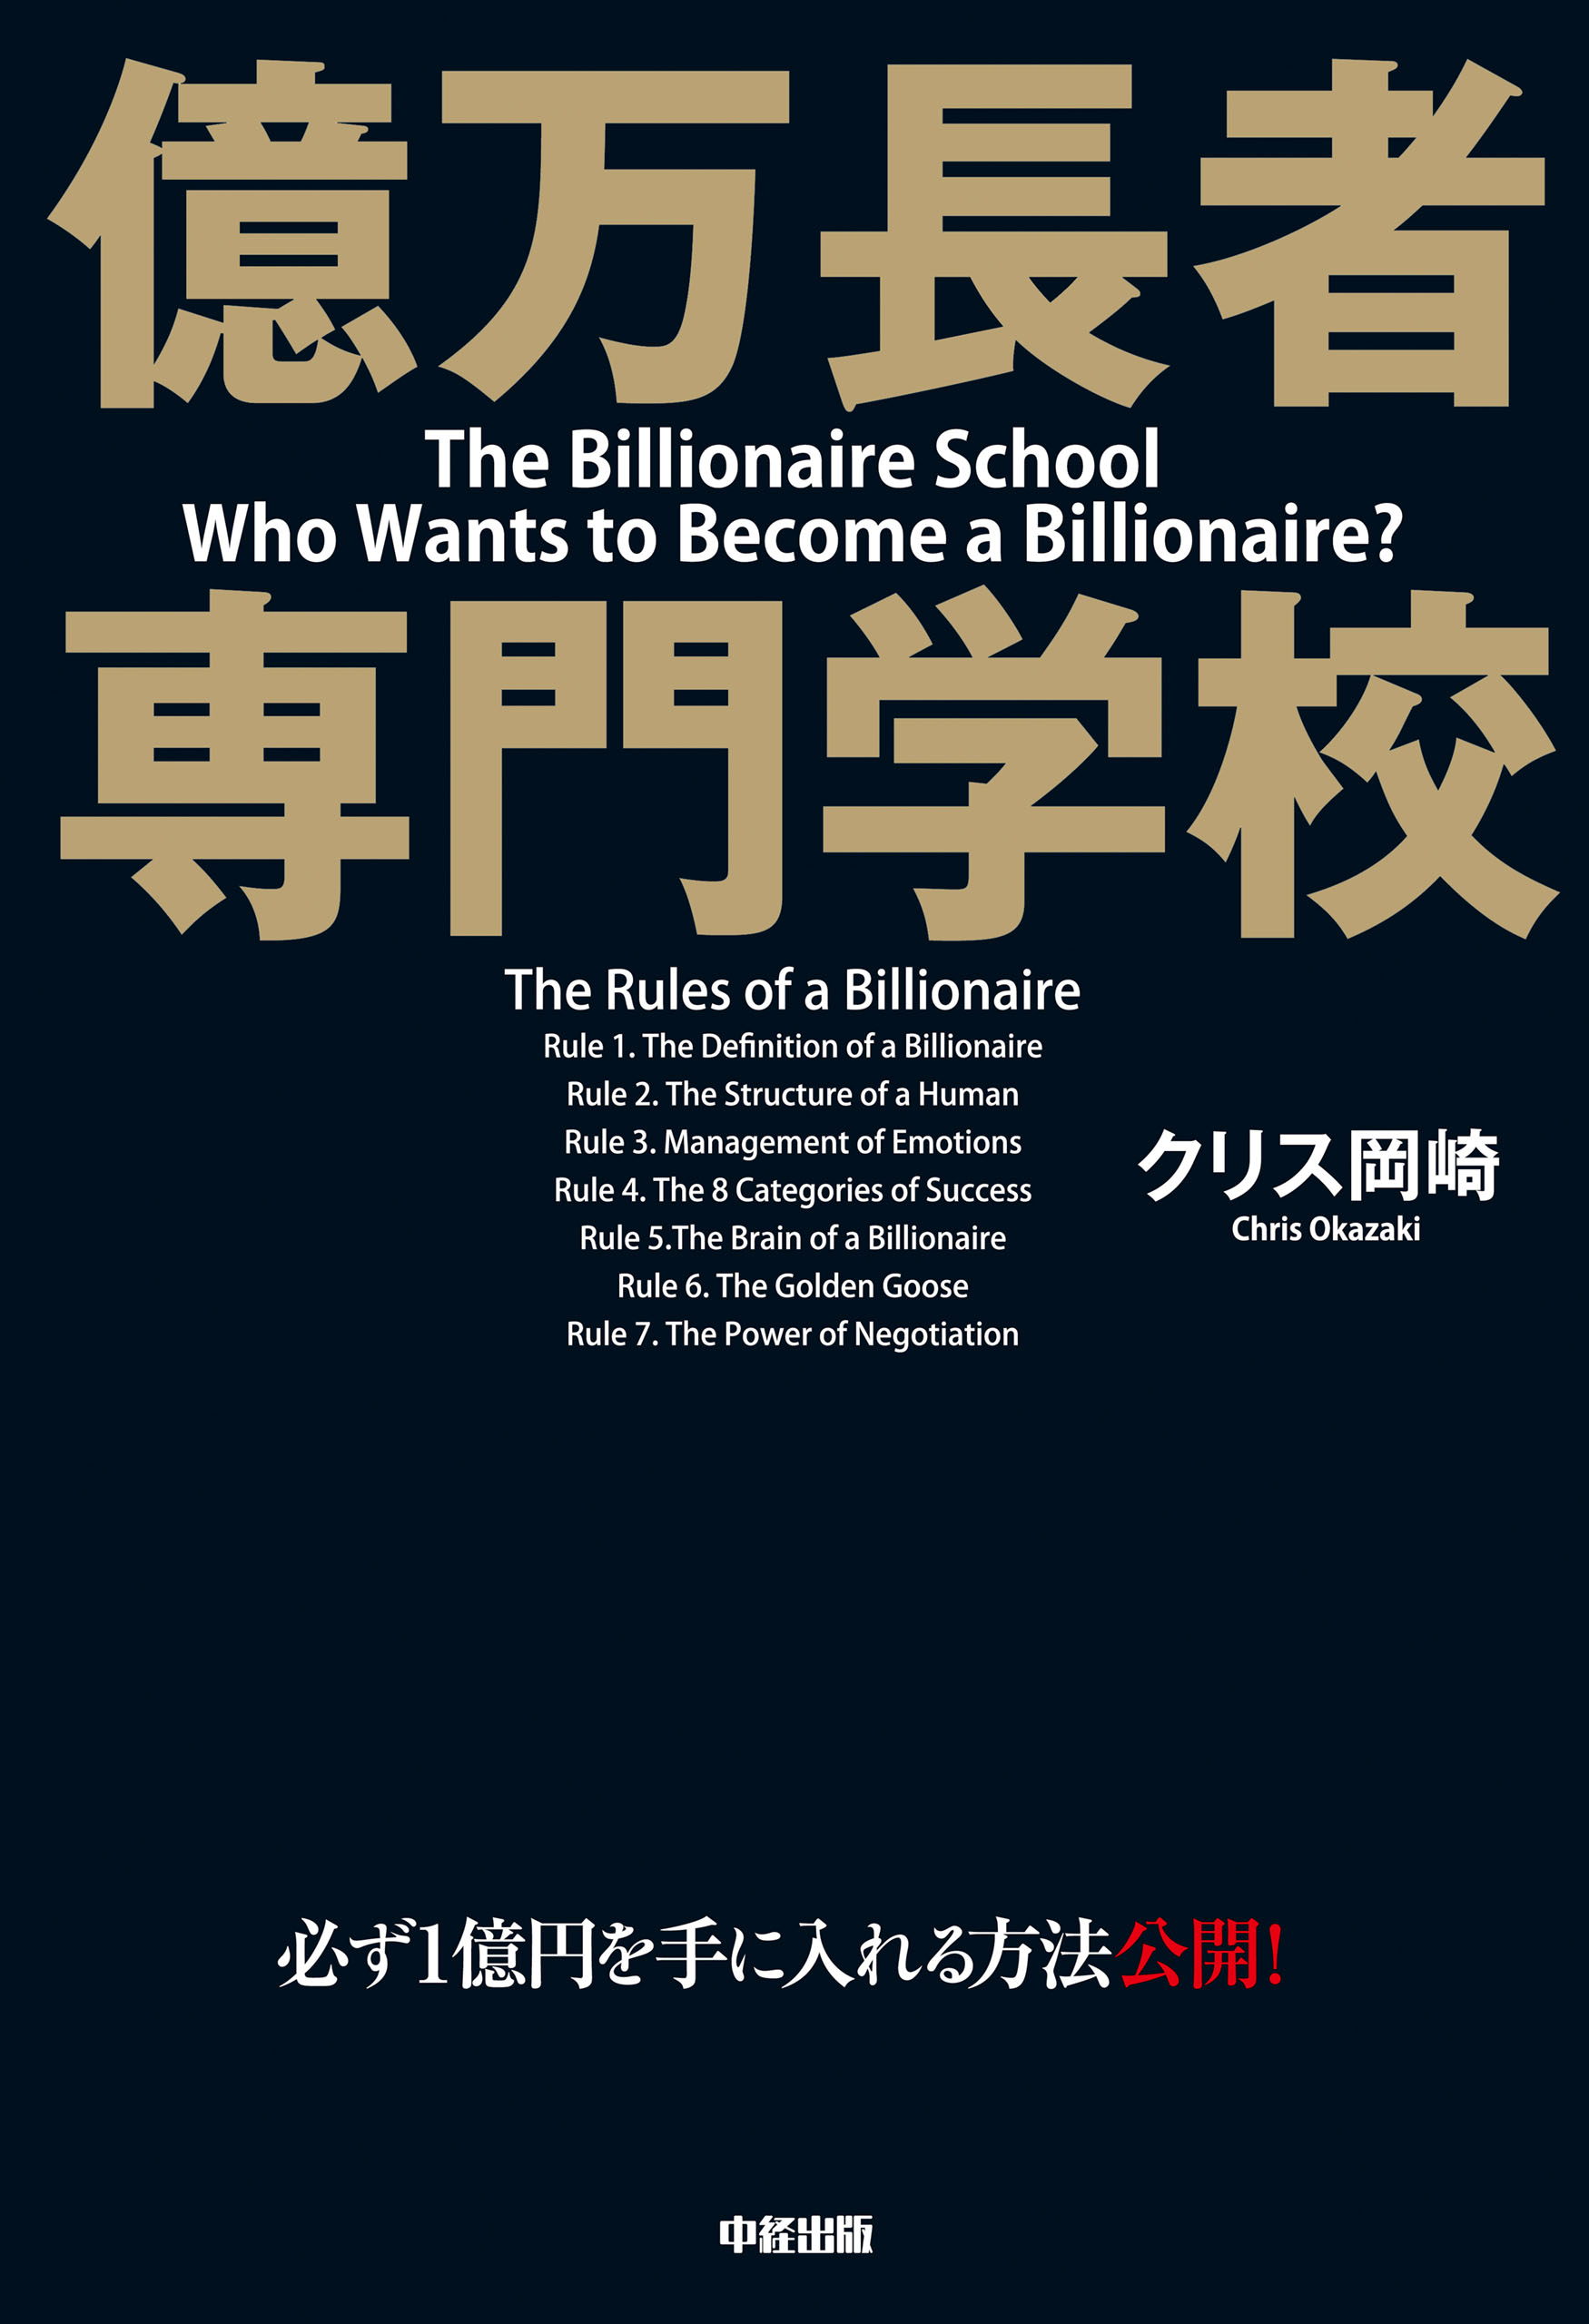 億万長者 専門学校(書籍) - 電子書籍 | U-NEXT 初回600円分無料